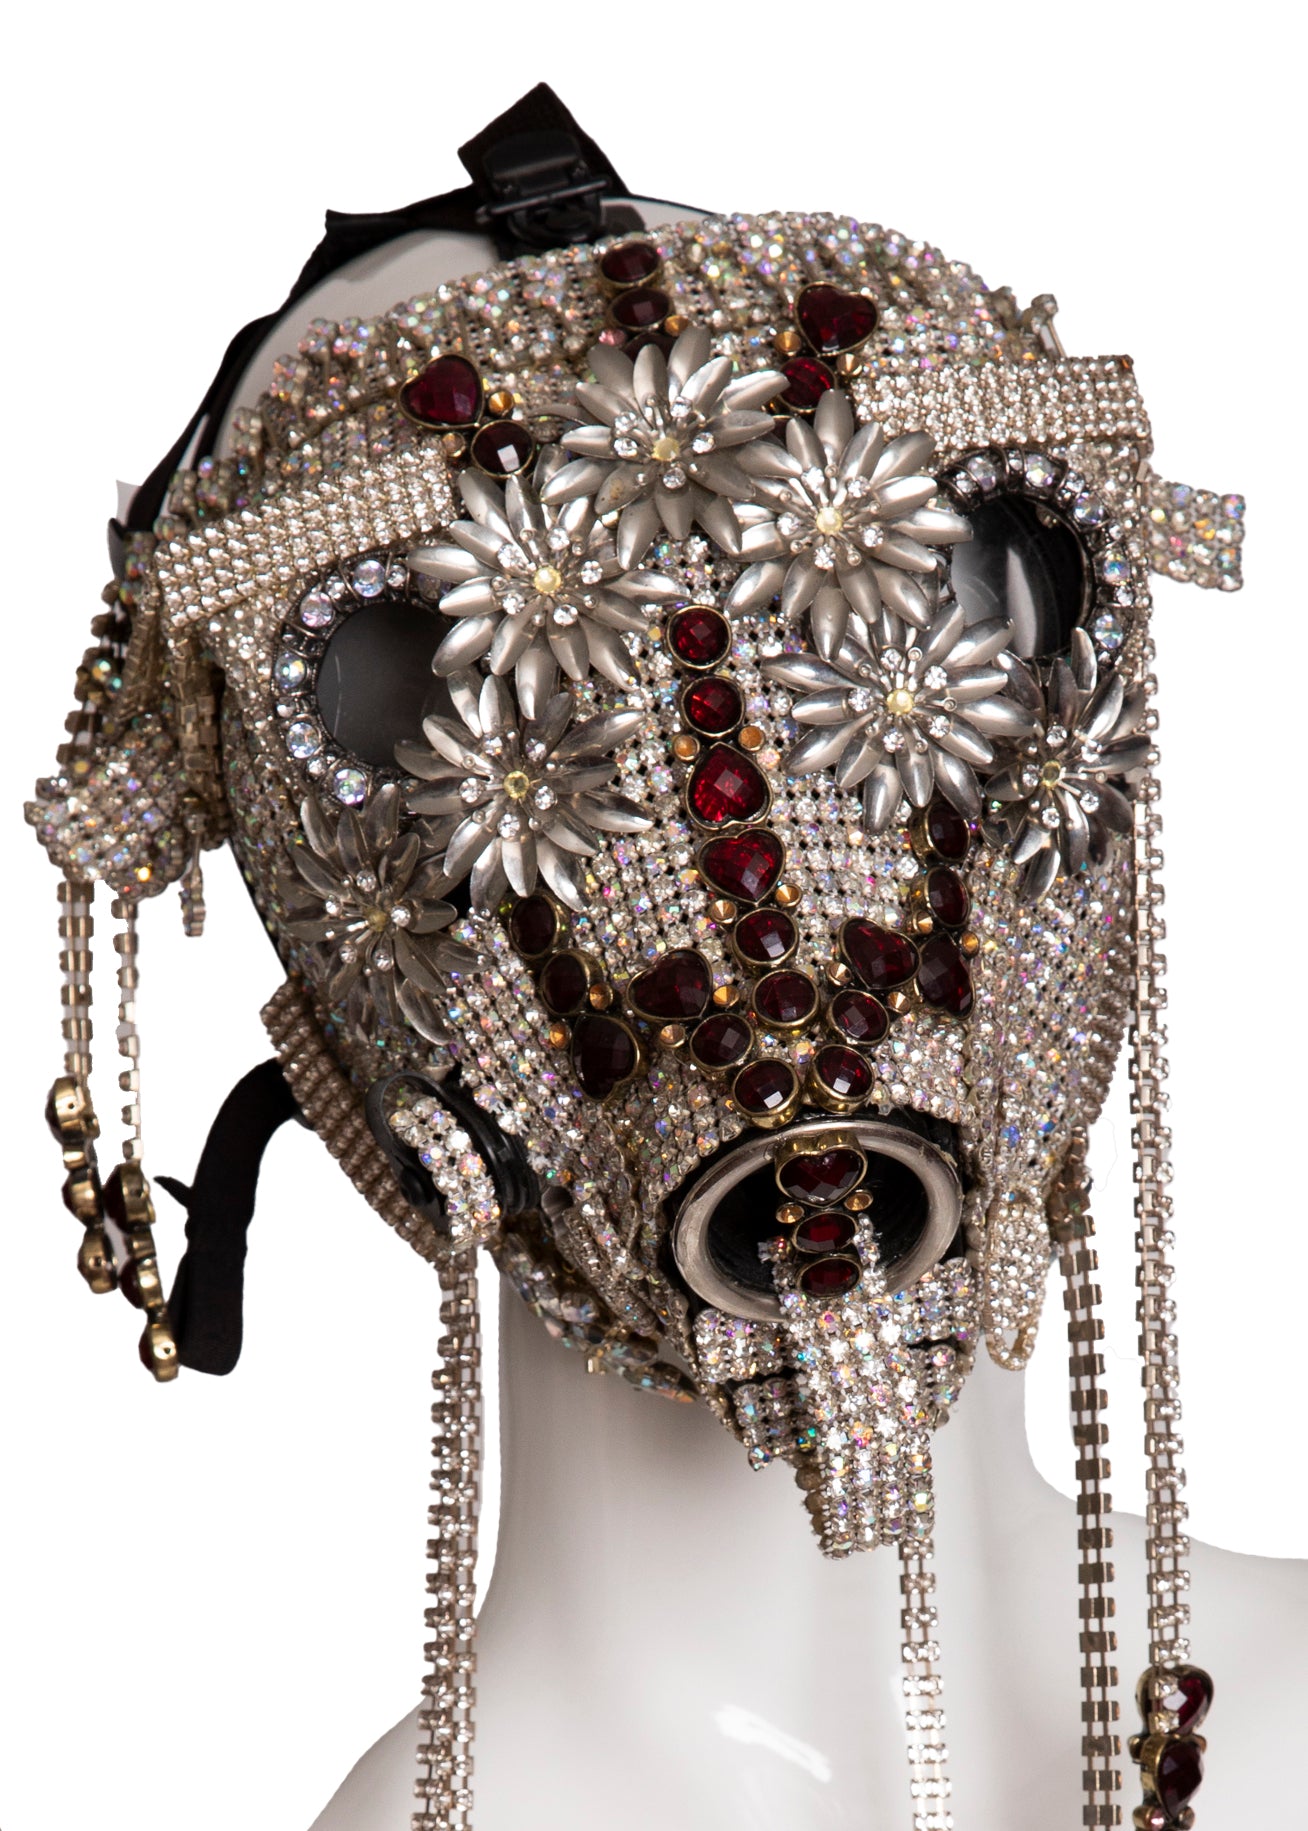 Steven Tyler Jeweled Mask